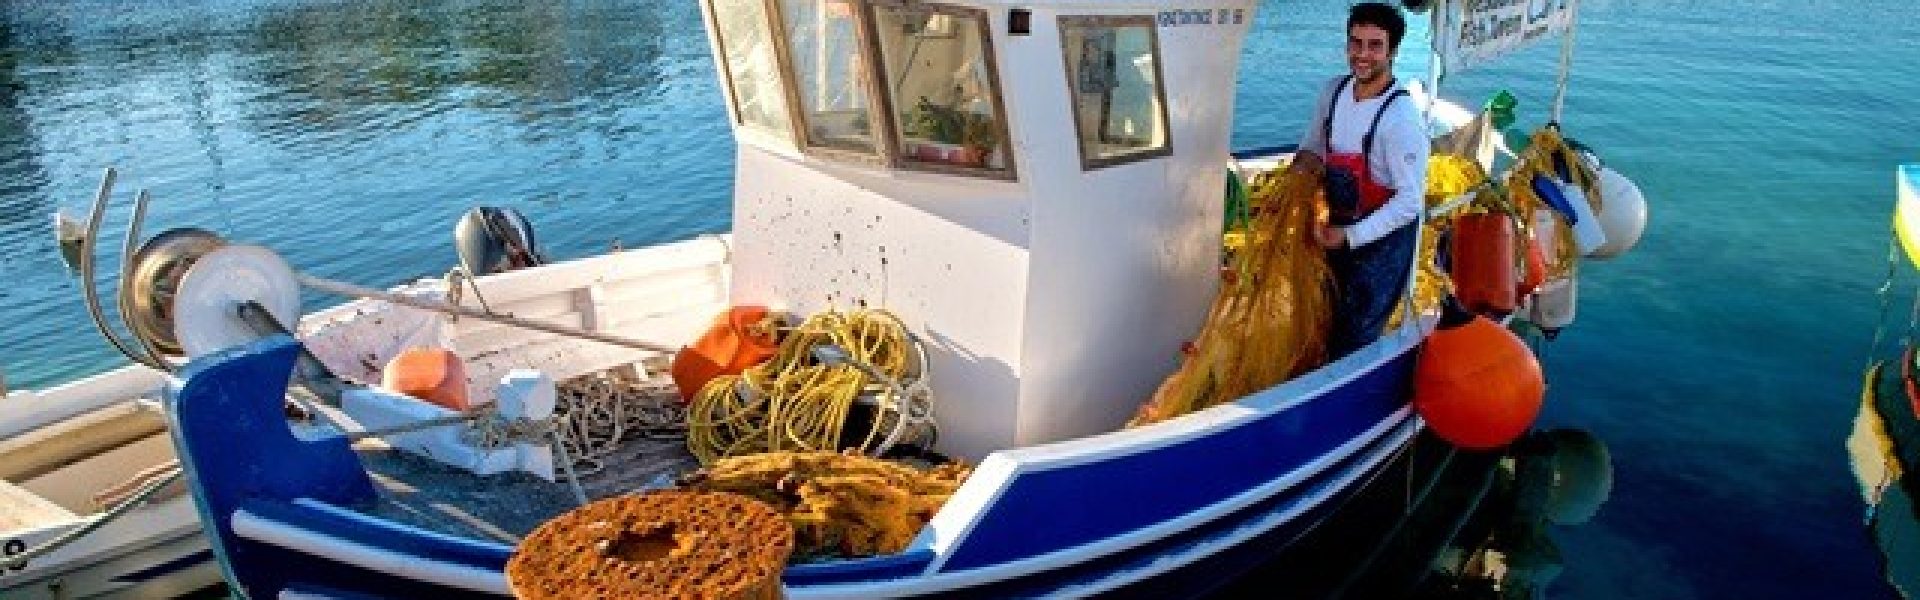 Fischerboot-samos-urlaubsreisen griechenland-urlaubsangebote Das Bild zeigt ein malerisches Fischerboot vor der Küste von Samos, einer bezaubernden Insel in Griechenland. Samos ist bekannt für seine idyllischen Strände, kristallklares Wasser und charmante Dörfer. Es ist ein beliebtes Ziel für Urlaubsreisen und bietet eine Vielzahl von Urlaubsangeboten für Reisende. Genießen Sie entspannte Tage am Strand, erkunden Sie historische Stätten und lassen Sie sich von der Gastfreundschaft der Einheimischen verwöhnen. Samos ist ein wahrer Geheimtipp für einen unvergesslichen Urlaub in Griechenland.